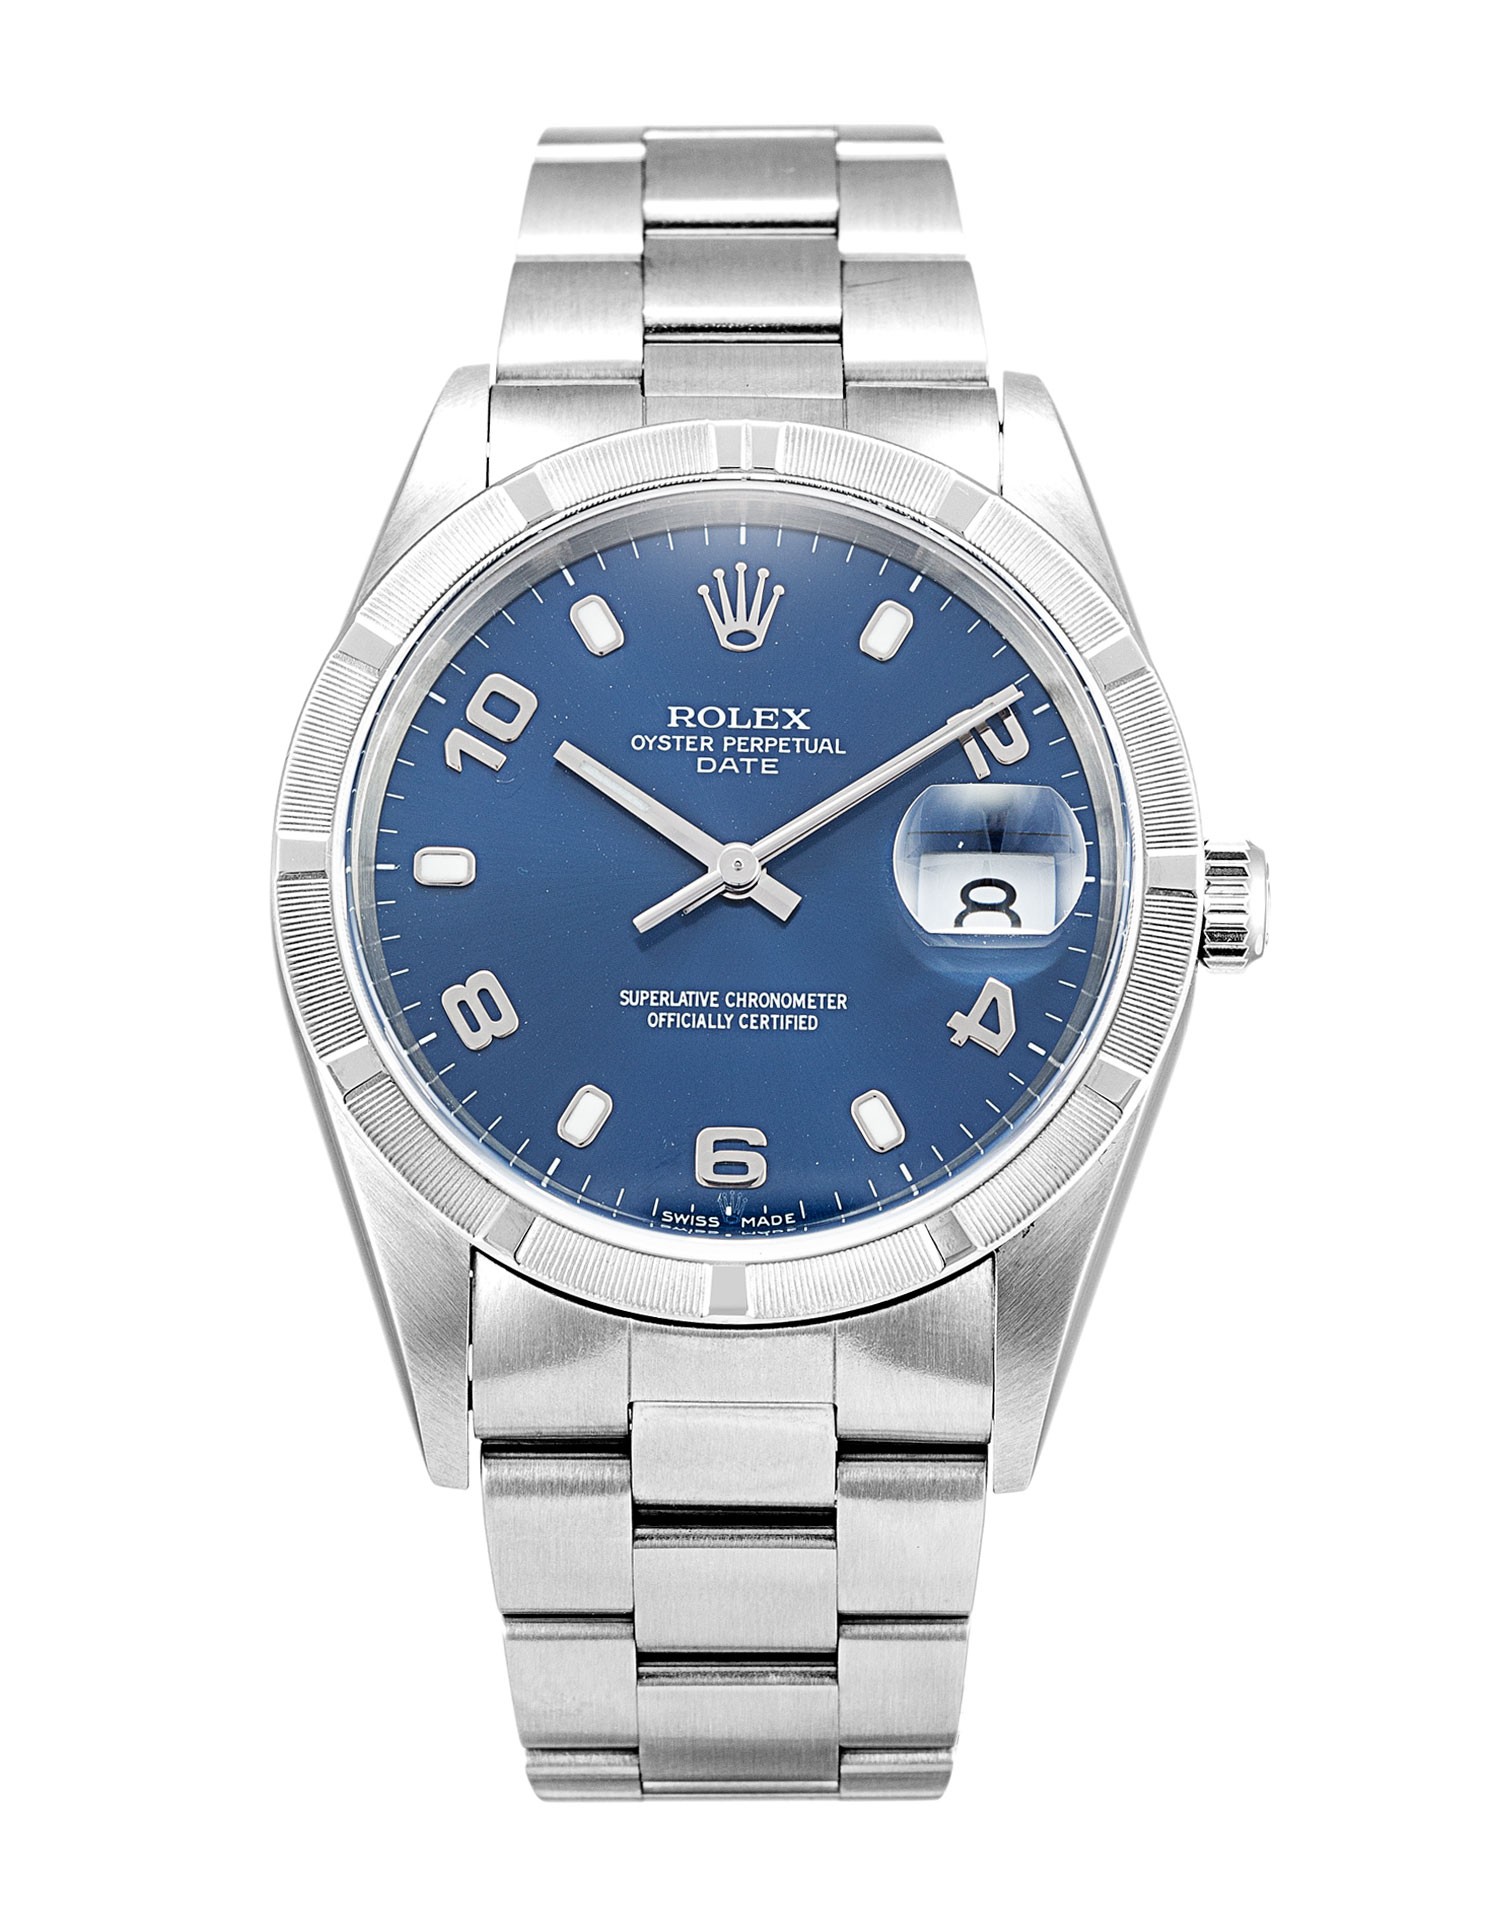 Replica Rolex Oyster Perpetual Date 15210